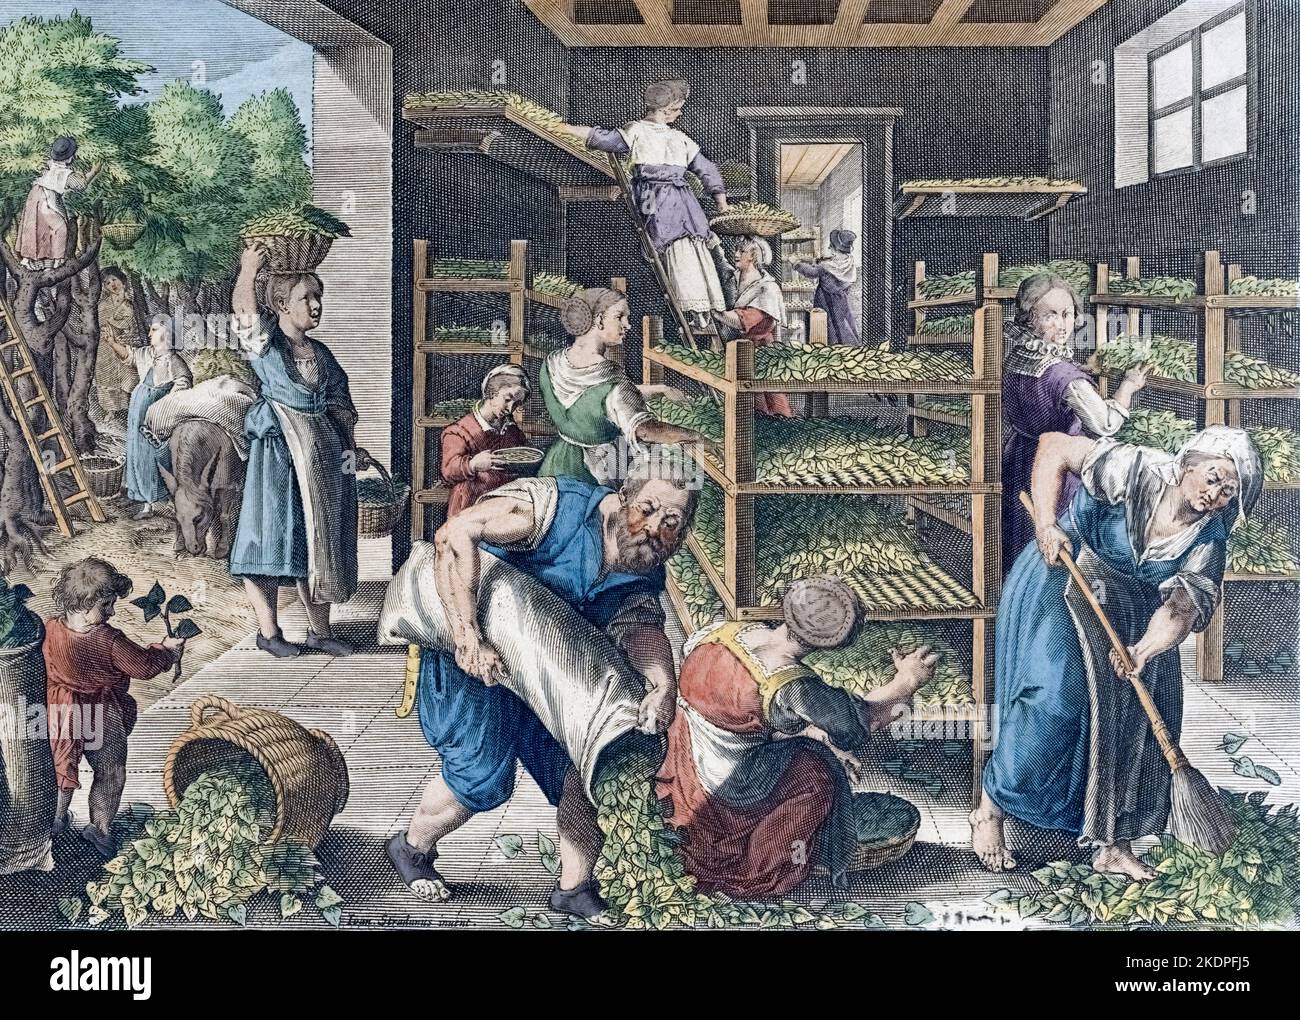 Producción de seda en Europa en el siglo 16th. Recogiendo hojas de morera y alimentando a los gusanos de seda. De Vermis Sericus, una serie de grabados de Karel van Mallery después de una obra de Jan van der Straet, conocida como Stradanus. Foto de stock